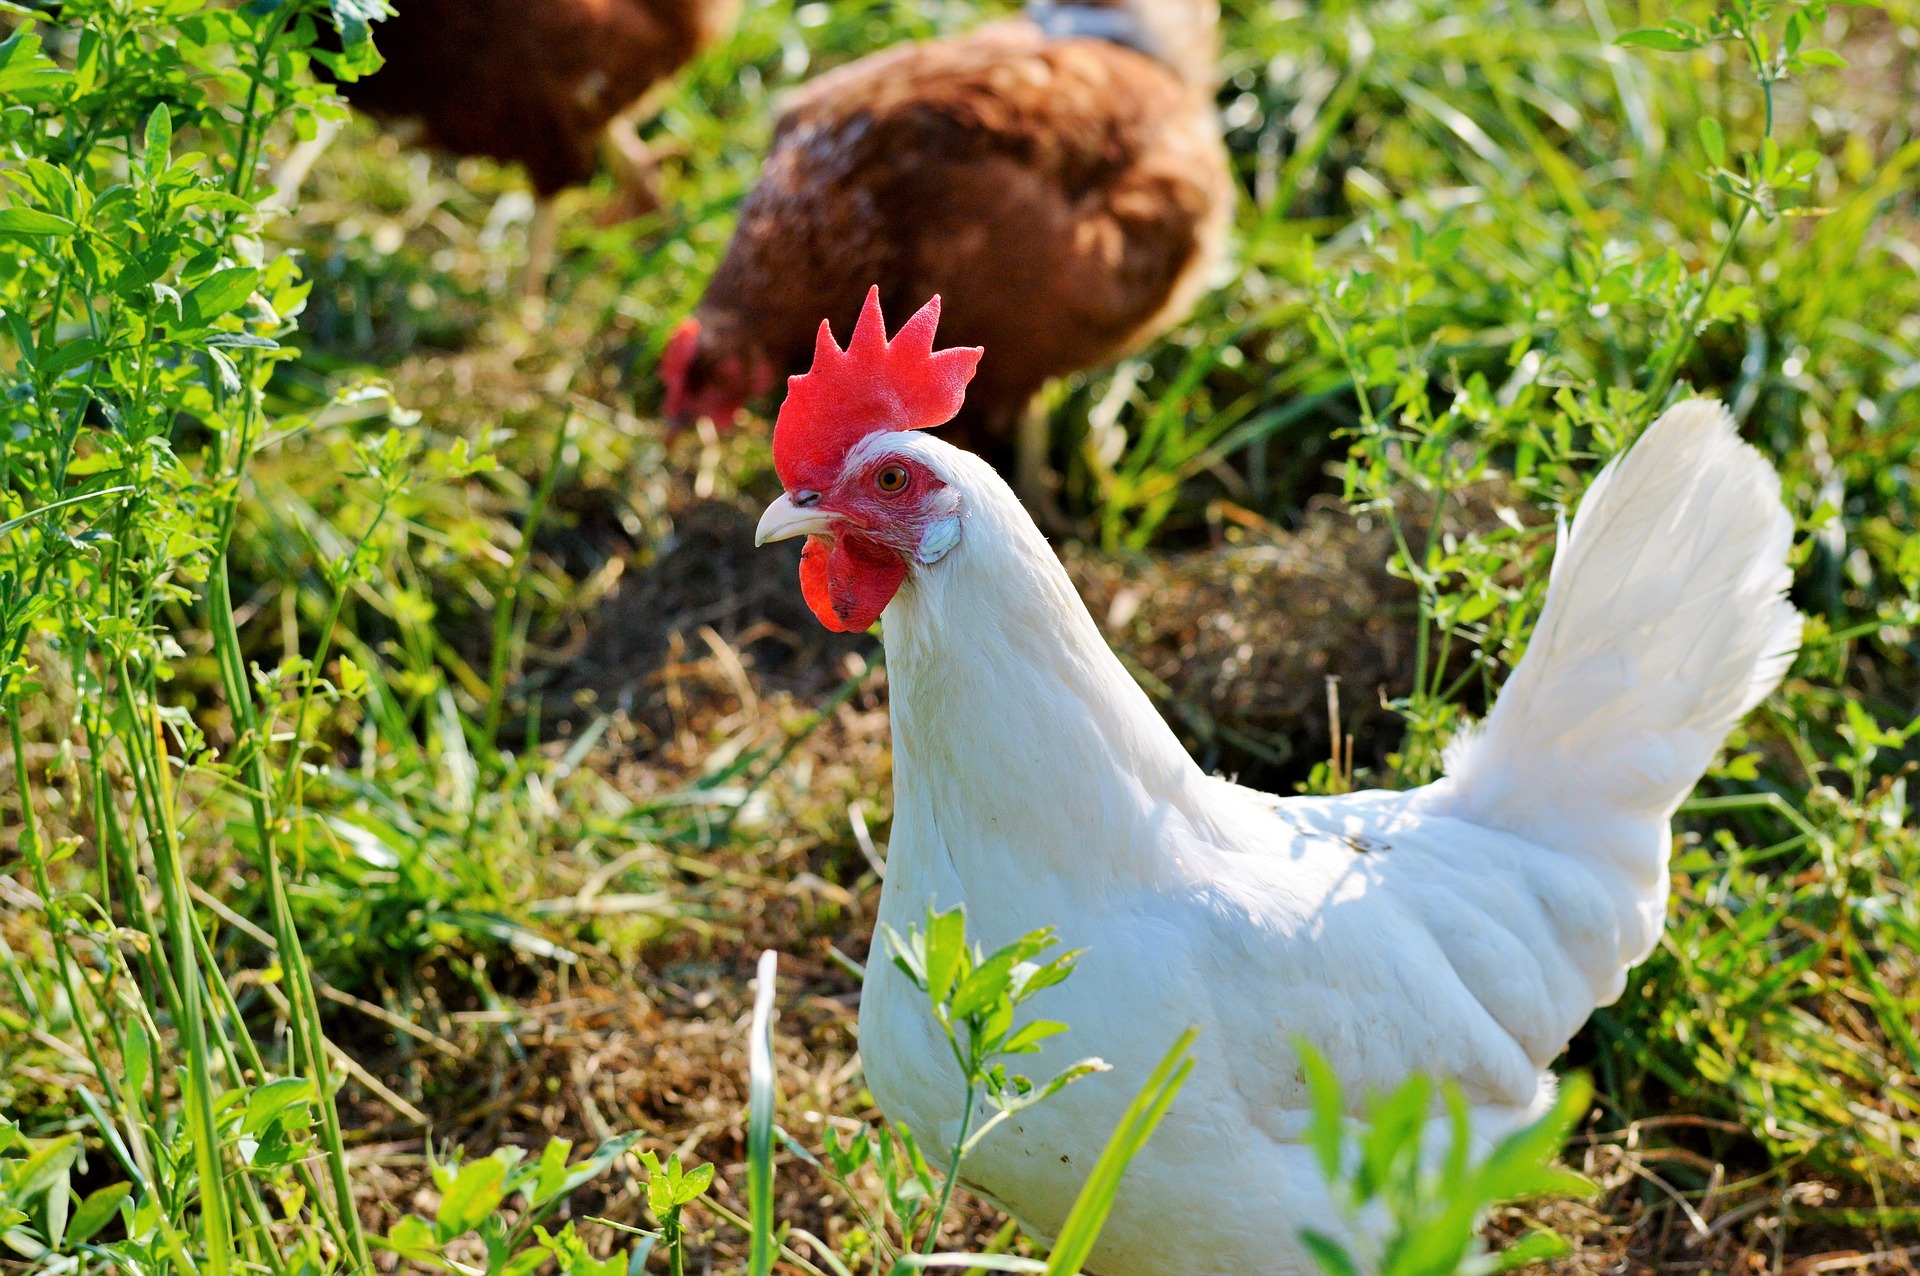 Kurczaki to źródło pełnowartościowego białka w diecie człowieka